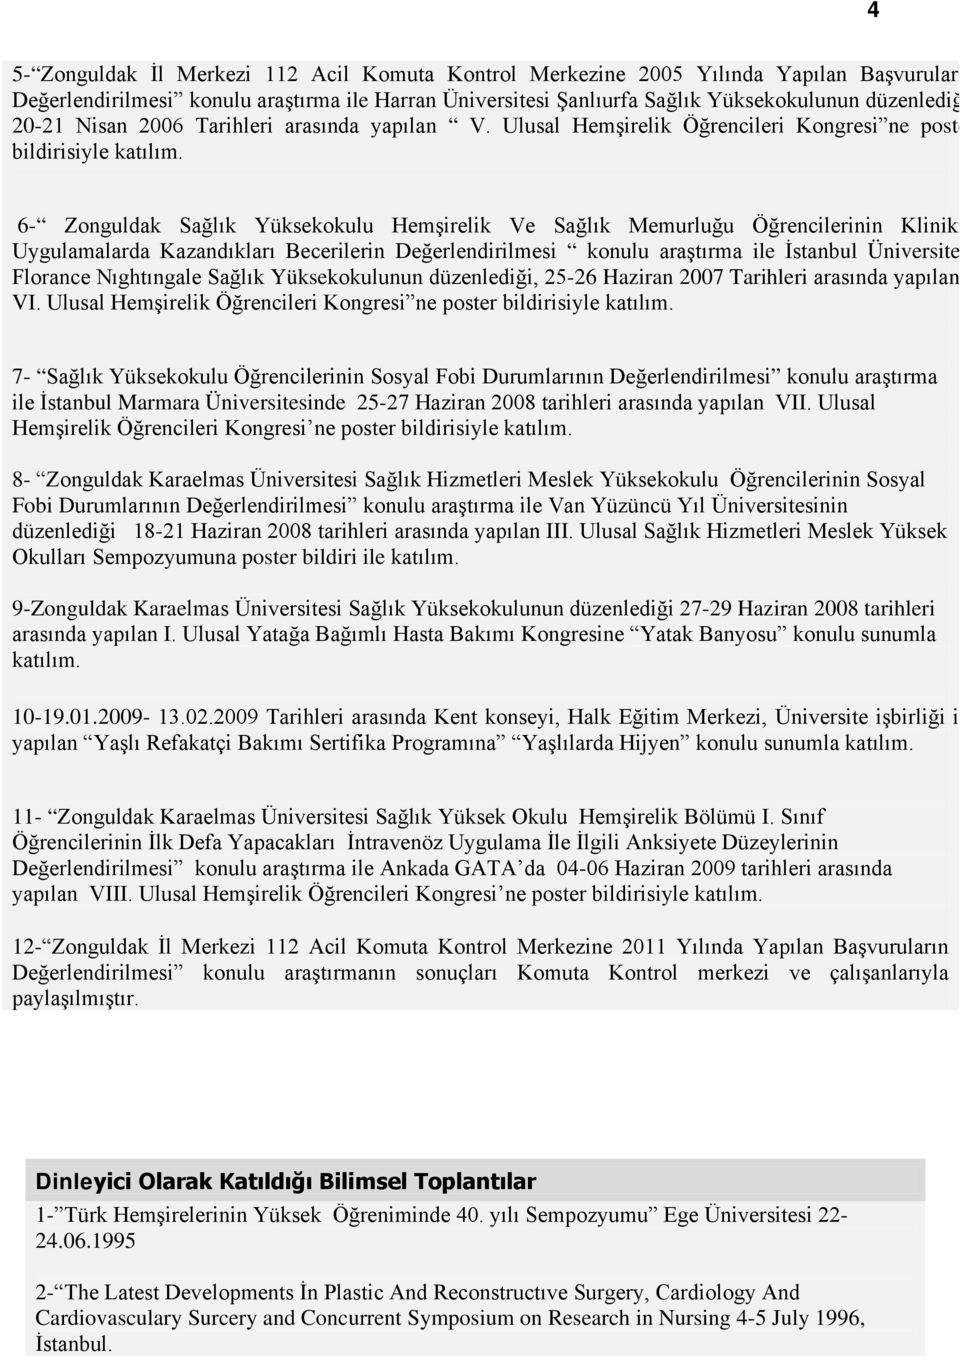 6- Zonguldak Sağlık Yüksekokulu Hemşirelik Ve Sağlık Memurluğu Öğrencilerinin Kliniki Uygulamalarda Kazandıkları Becerilerin Değerlendirilmesi konulu araştırma ile İstanbul Üniversite Florance